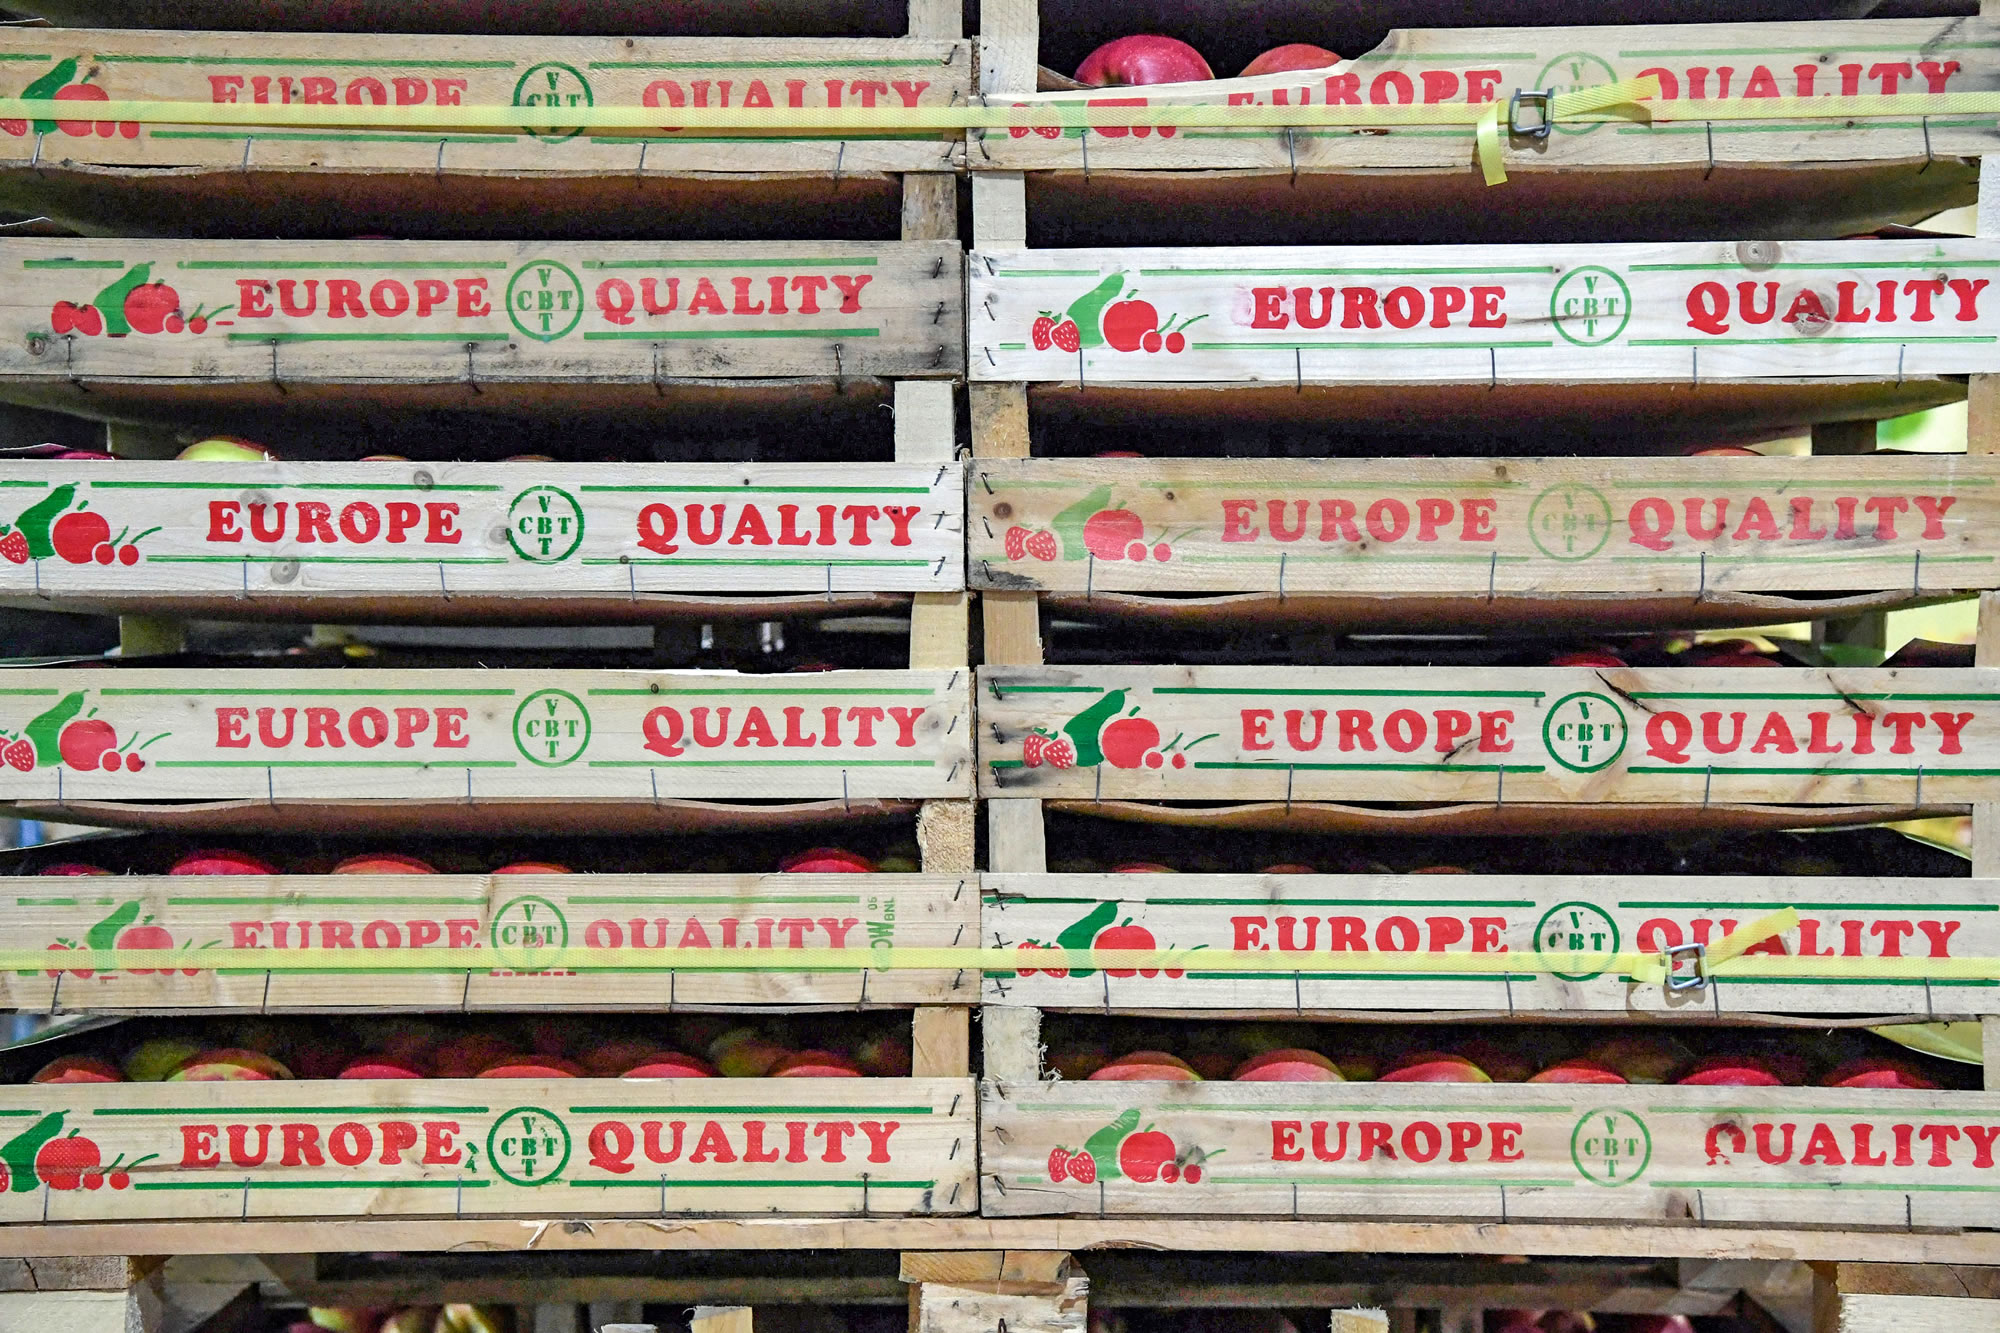 Douăsprezece lăzi de mere una peste alta, fiecare ladă purtând inscripția „Europe Quality”.